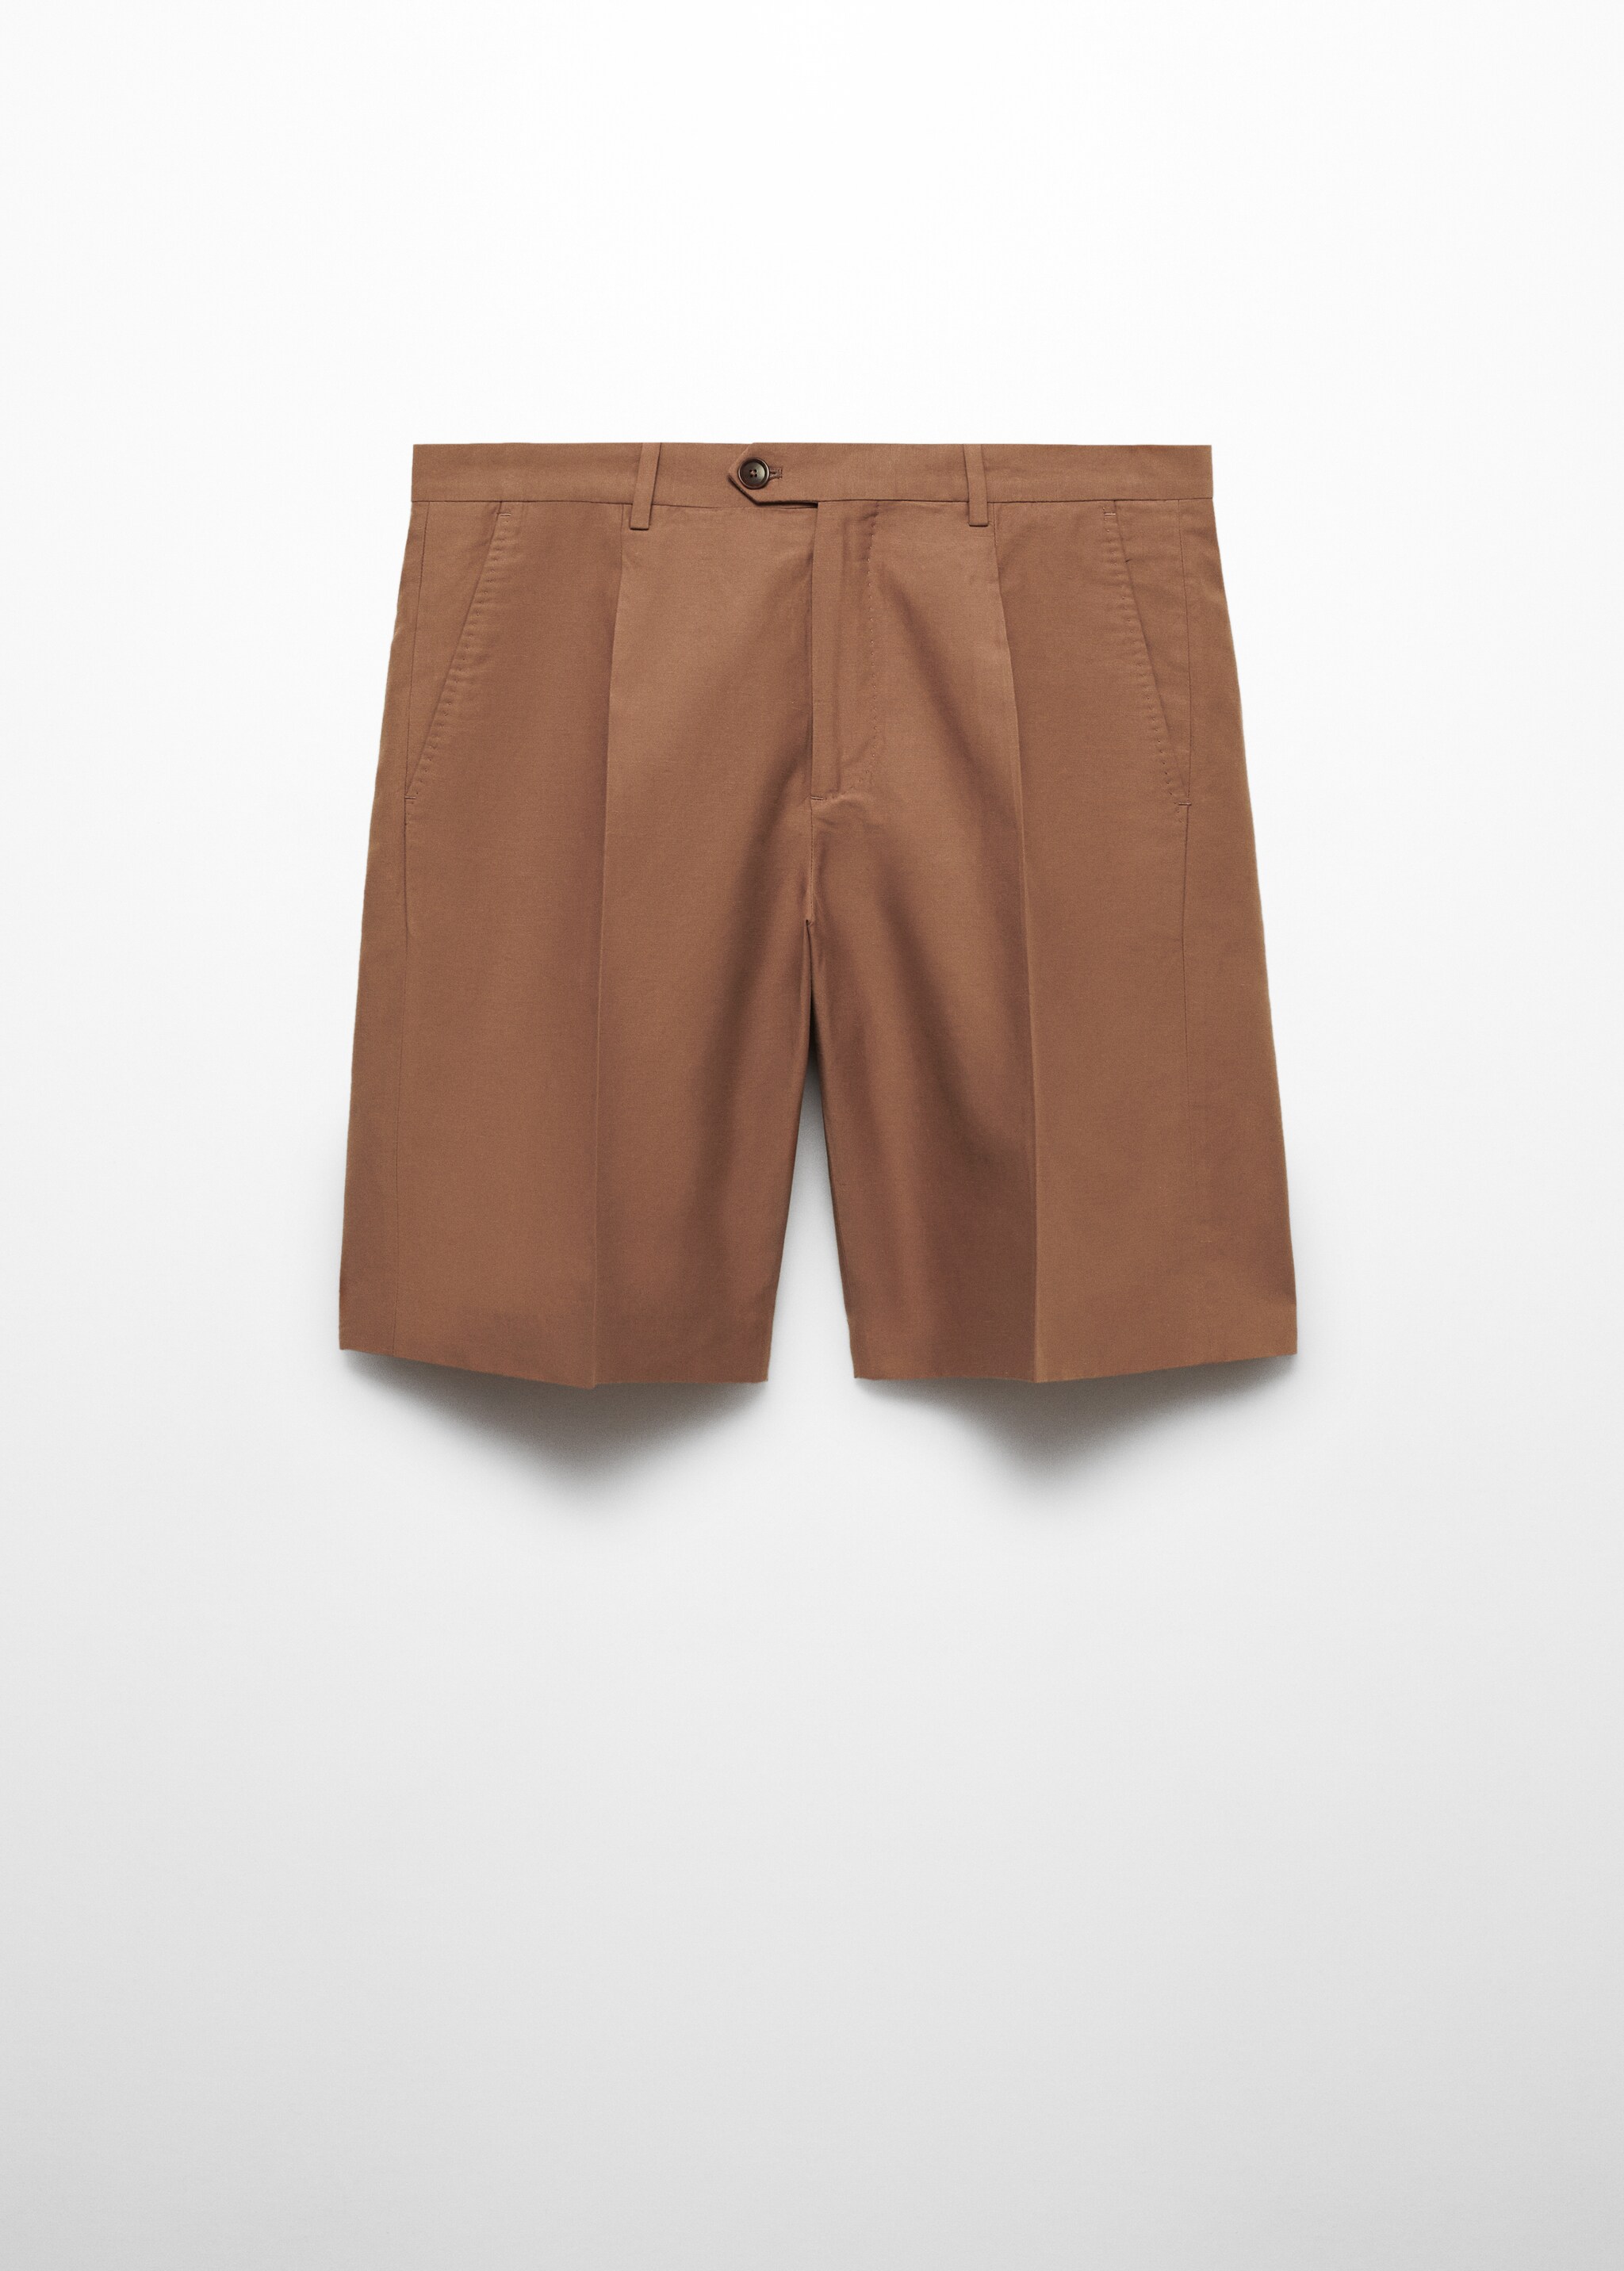 Bermuda cotton linen suit bermuda shorts - Article without model